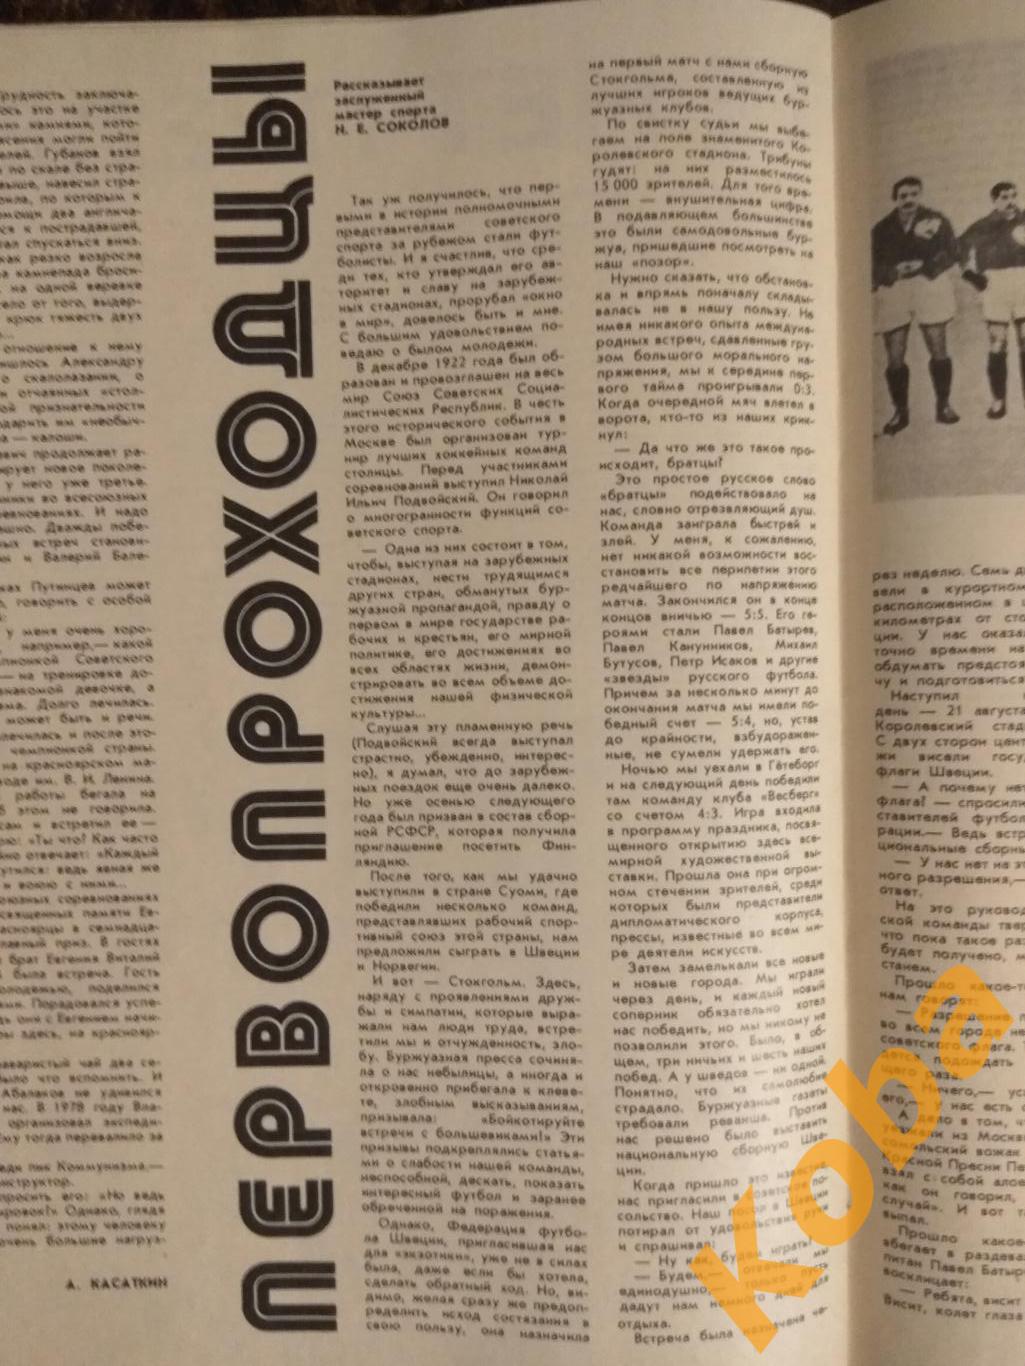 Третьяк Хоккей с мячом Енисей Футбол Чемпионат мира Испания 1982 СЖР 1982 №4 4